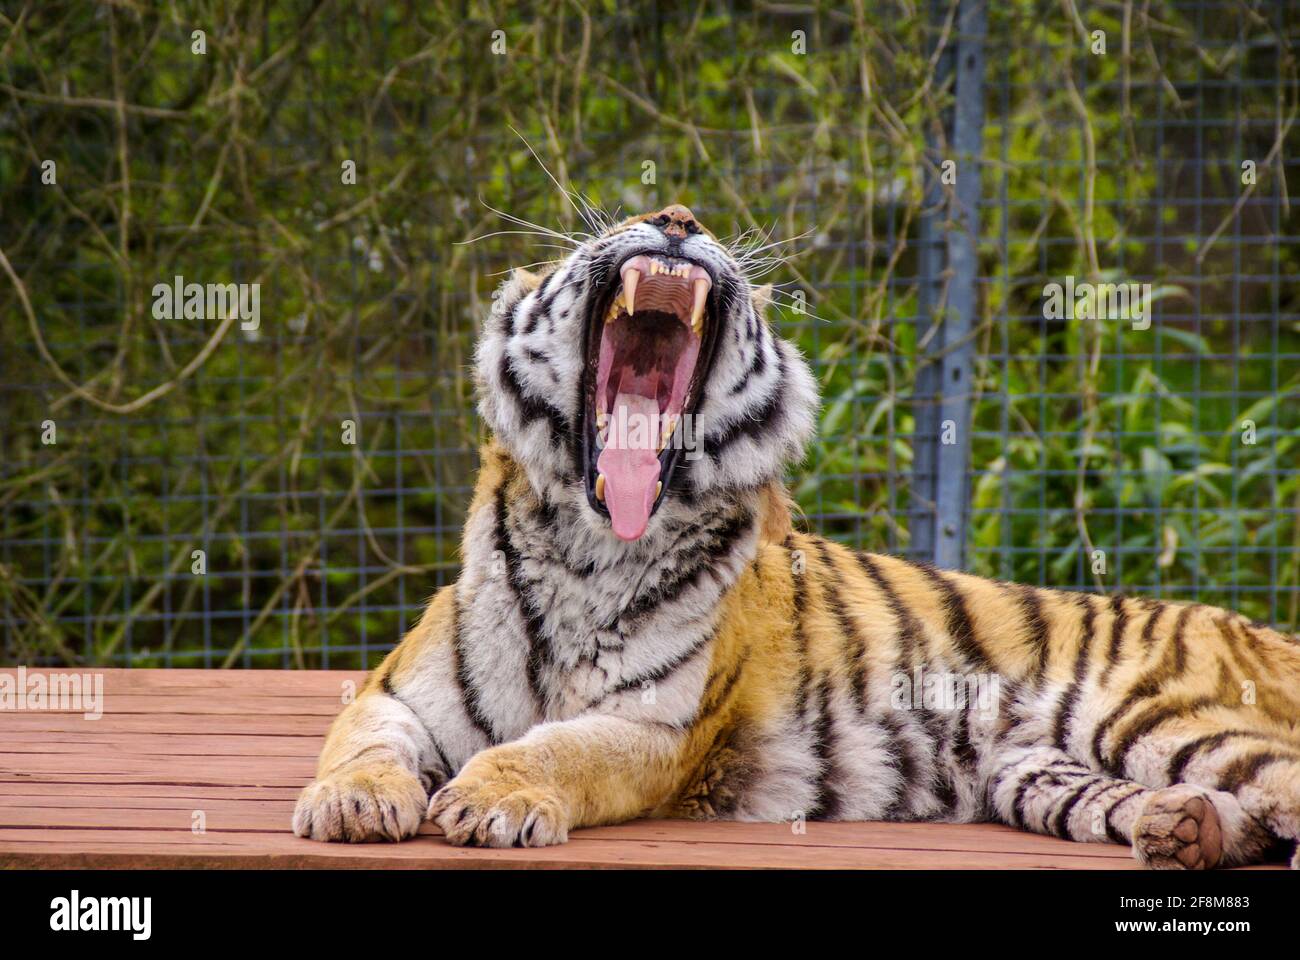 Sumatran Tiger au South Lakes Safari Zoo, anciennement South Lakes Wild Animal Park. En 2013, un tigre mauvait un employé du zoo. Bouche ouverte Banque D'Images